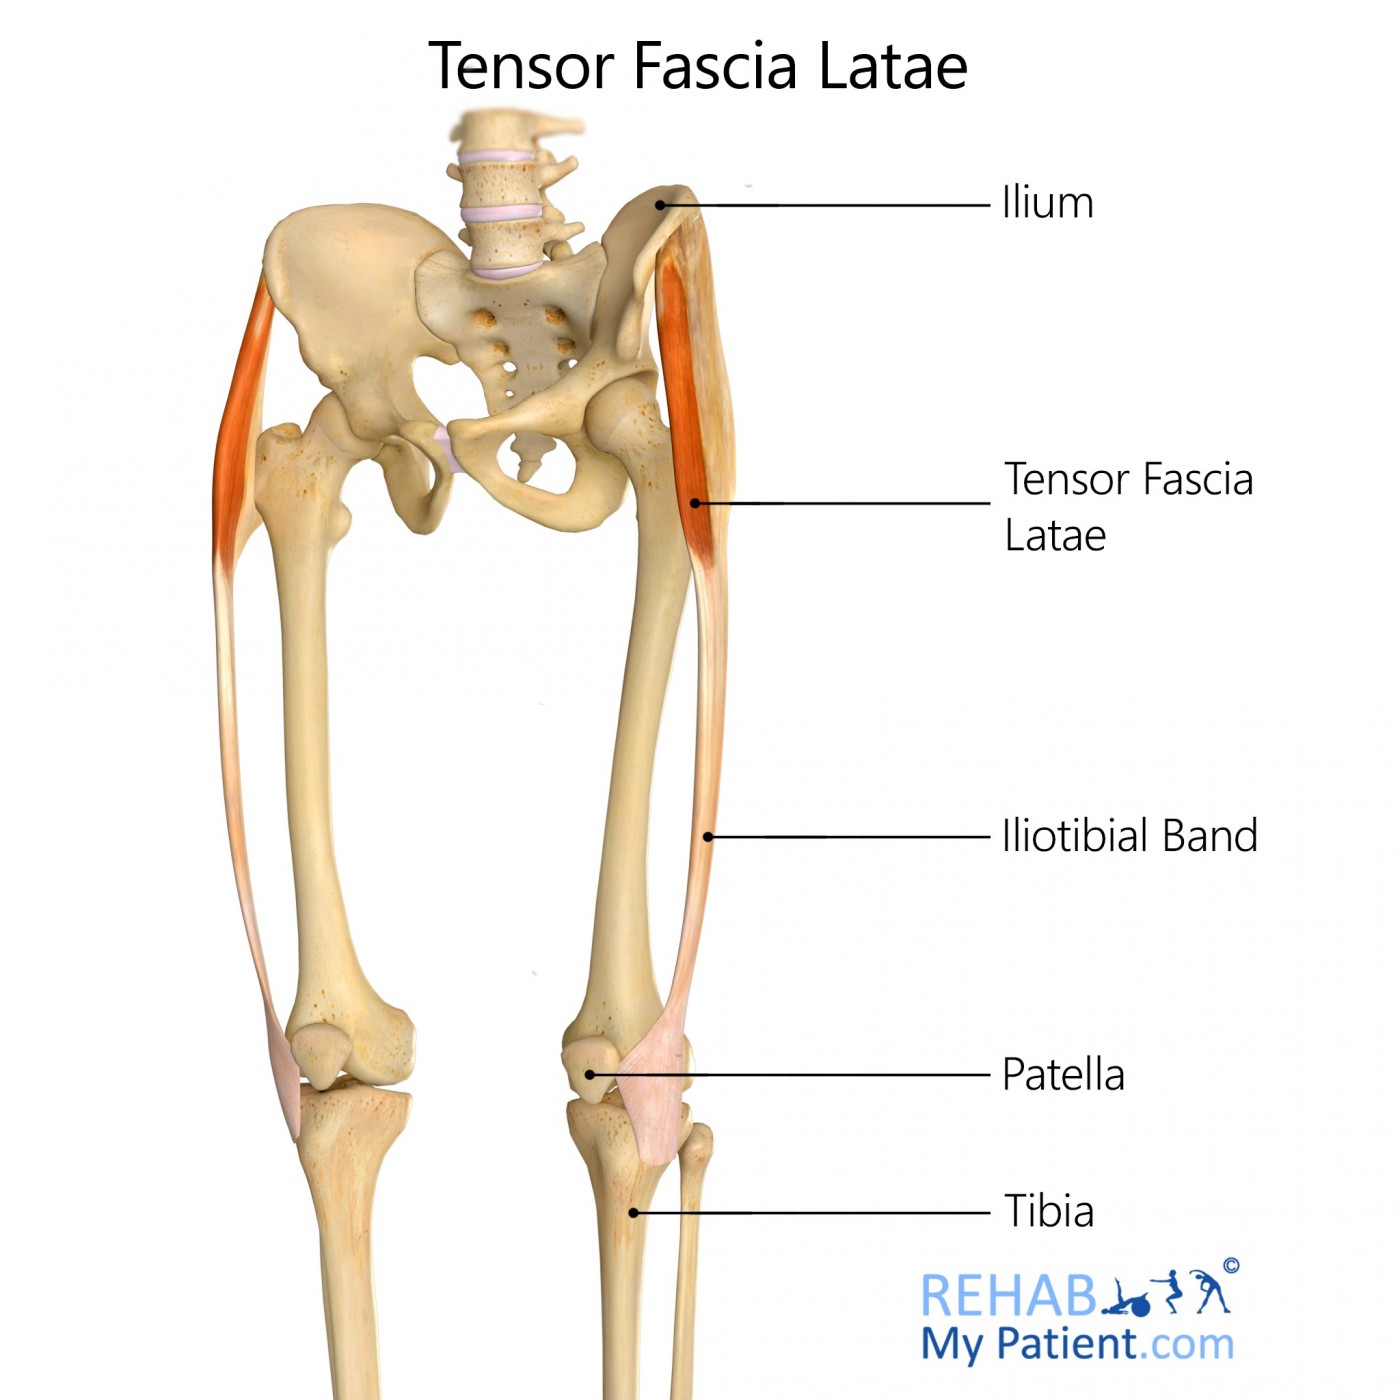 Tensor Fascia Latae Muscle And The Iliotibial Band - Yoganatomy